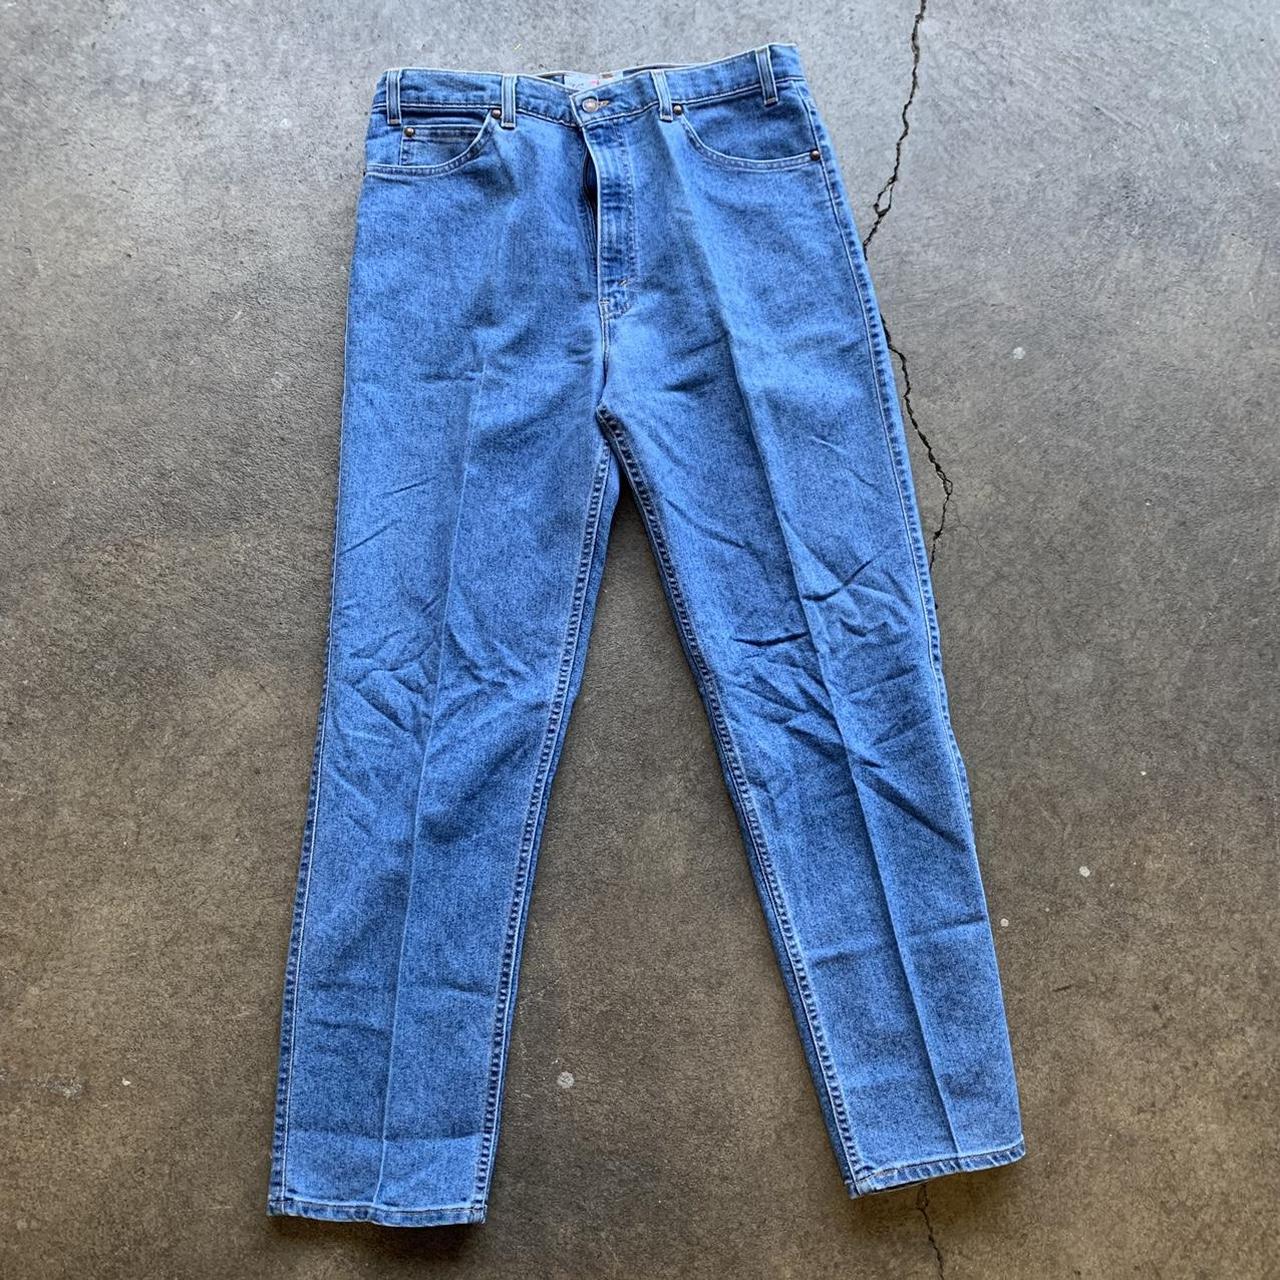 Vintage Levis 540 Brown Tab Jeans Measurements:... - Depop